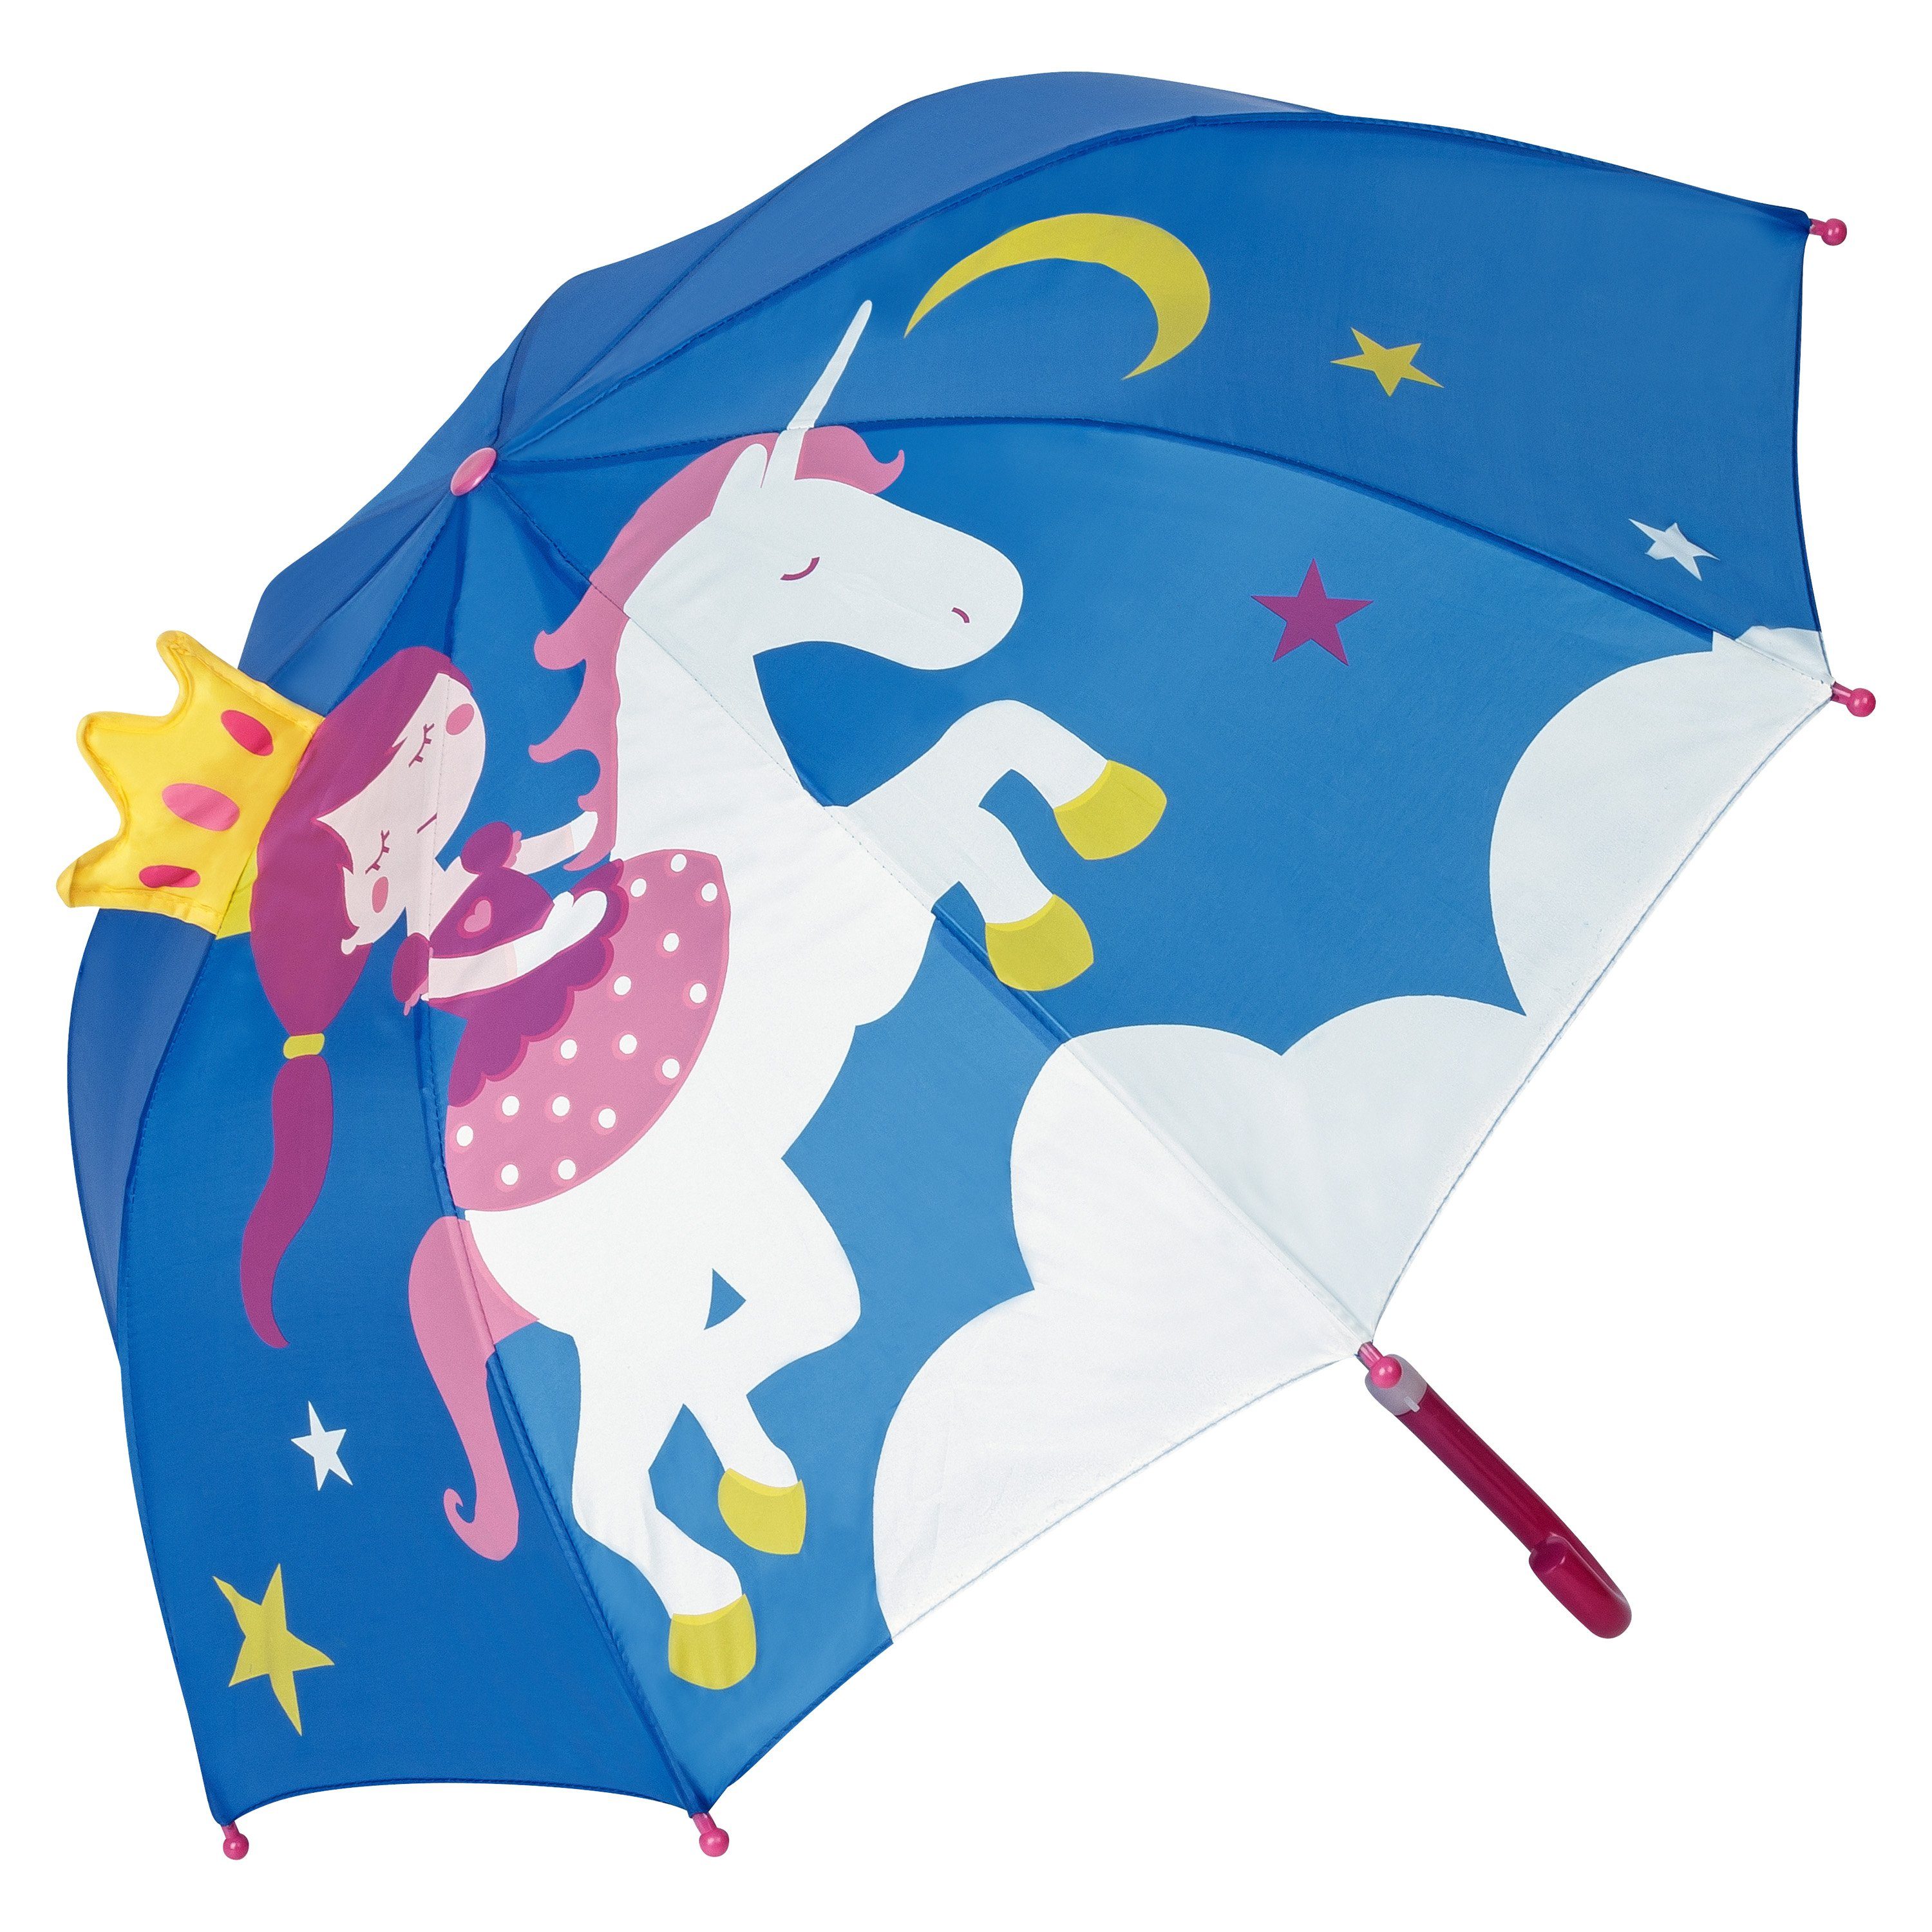 von Lilienfeld Stockregenschirm »VON LILIENFELD Regenschirm Kinderschirm  Märchen Prinzessin mit Einhorn Kinderregenschirm Junge Mädchen Kids bis ca.  8 Jahre«, 3D online kaufen | OTTO